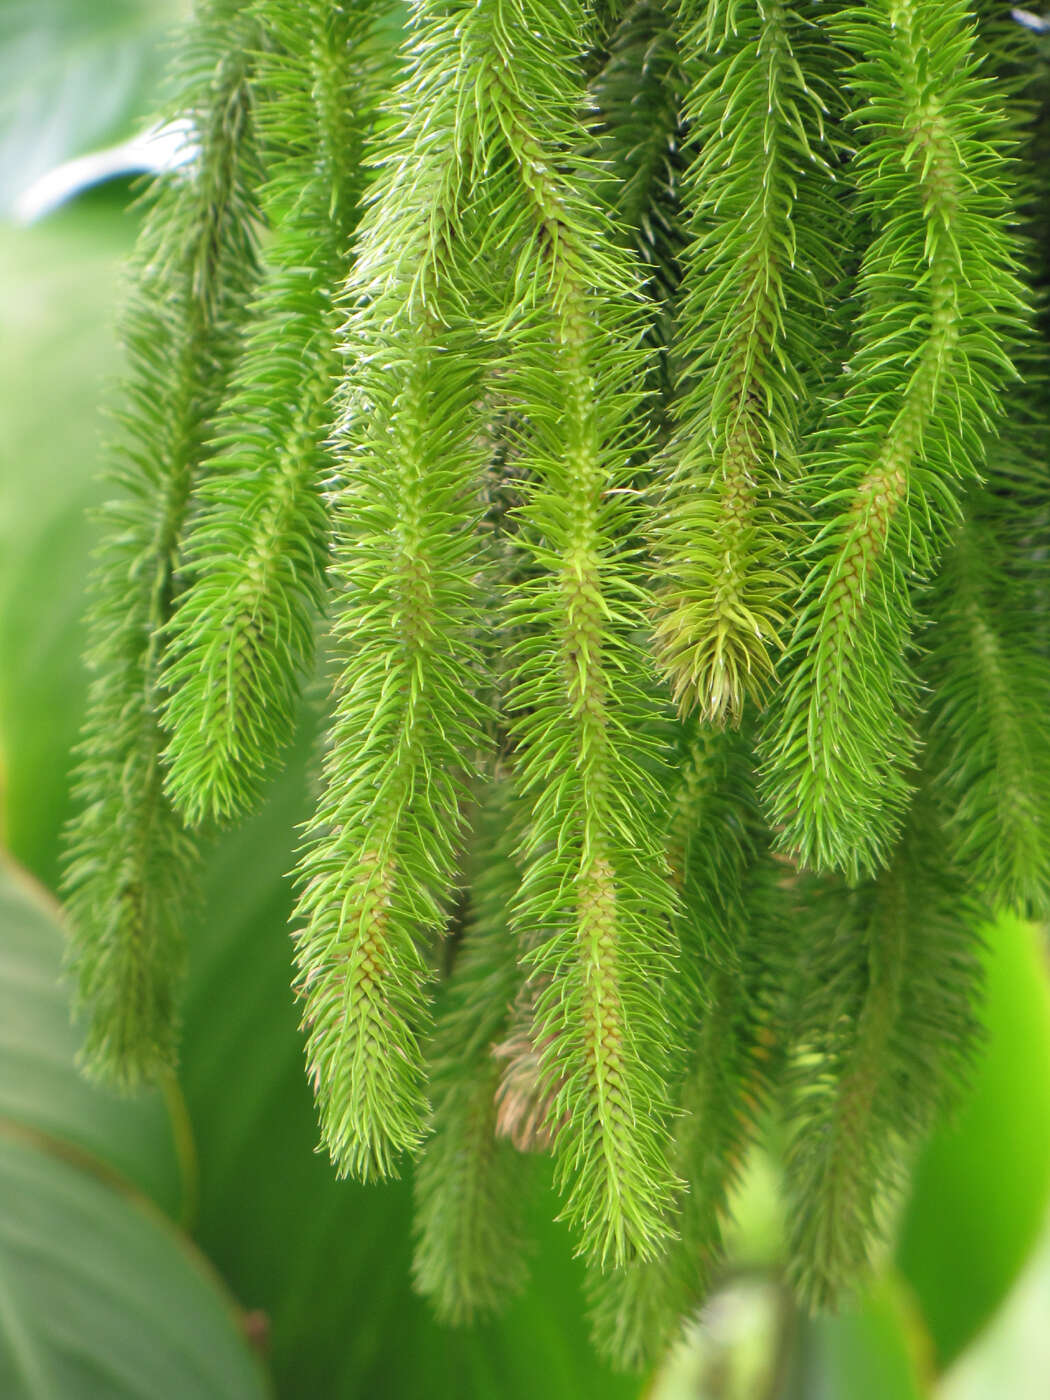 Image of rock tassel fern